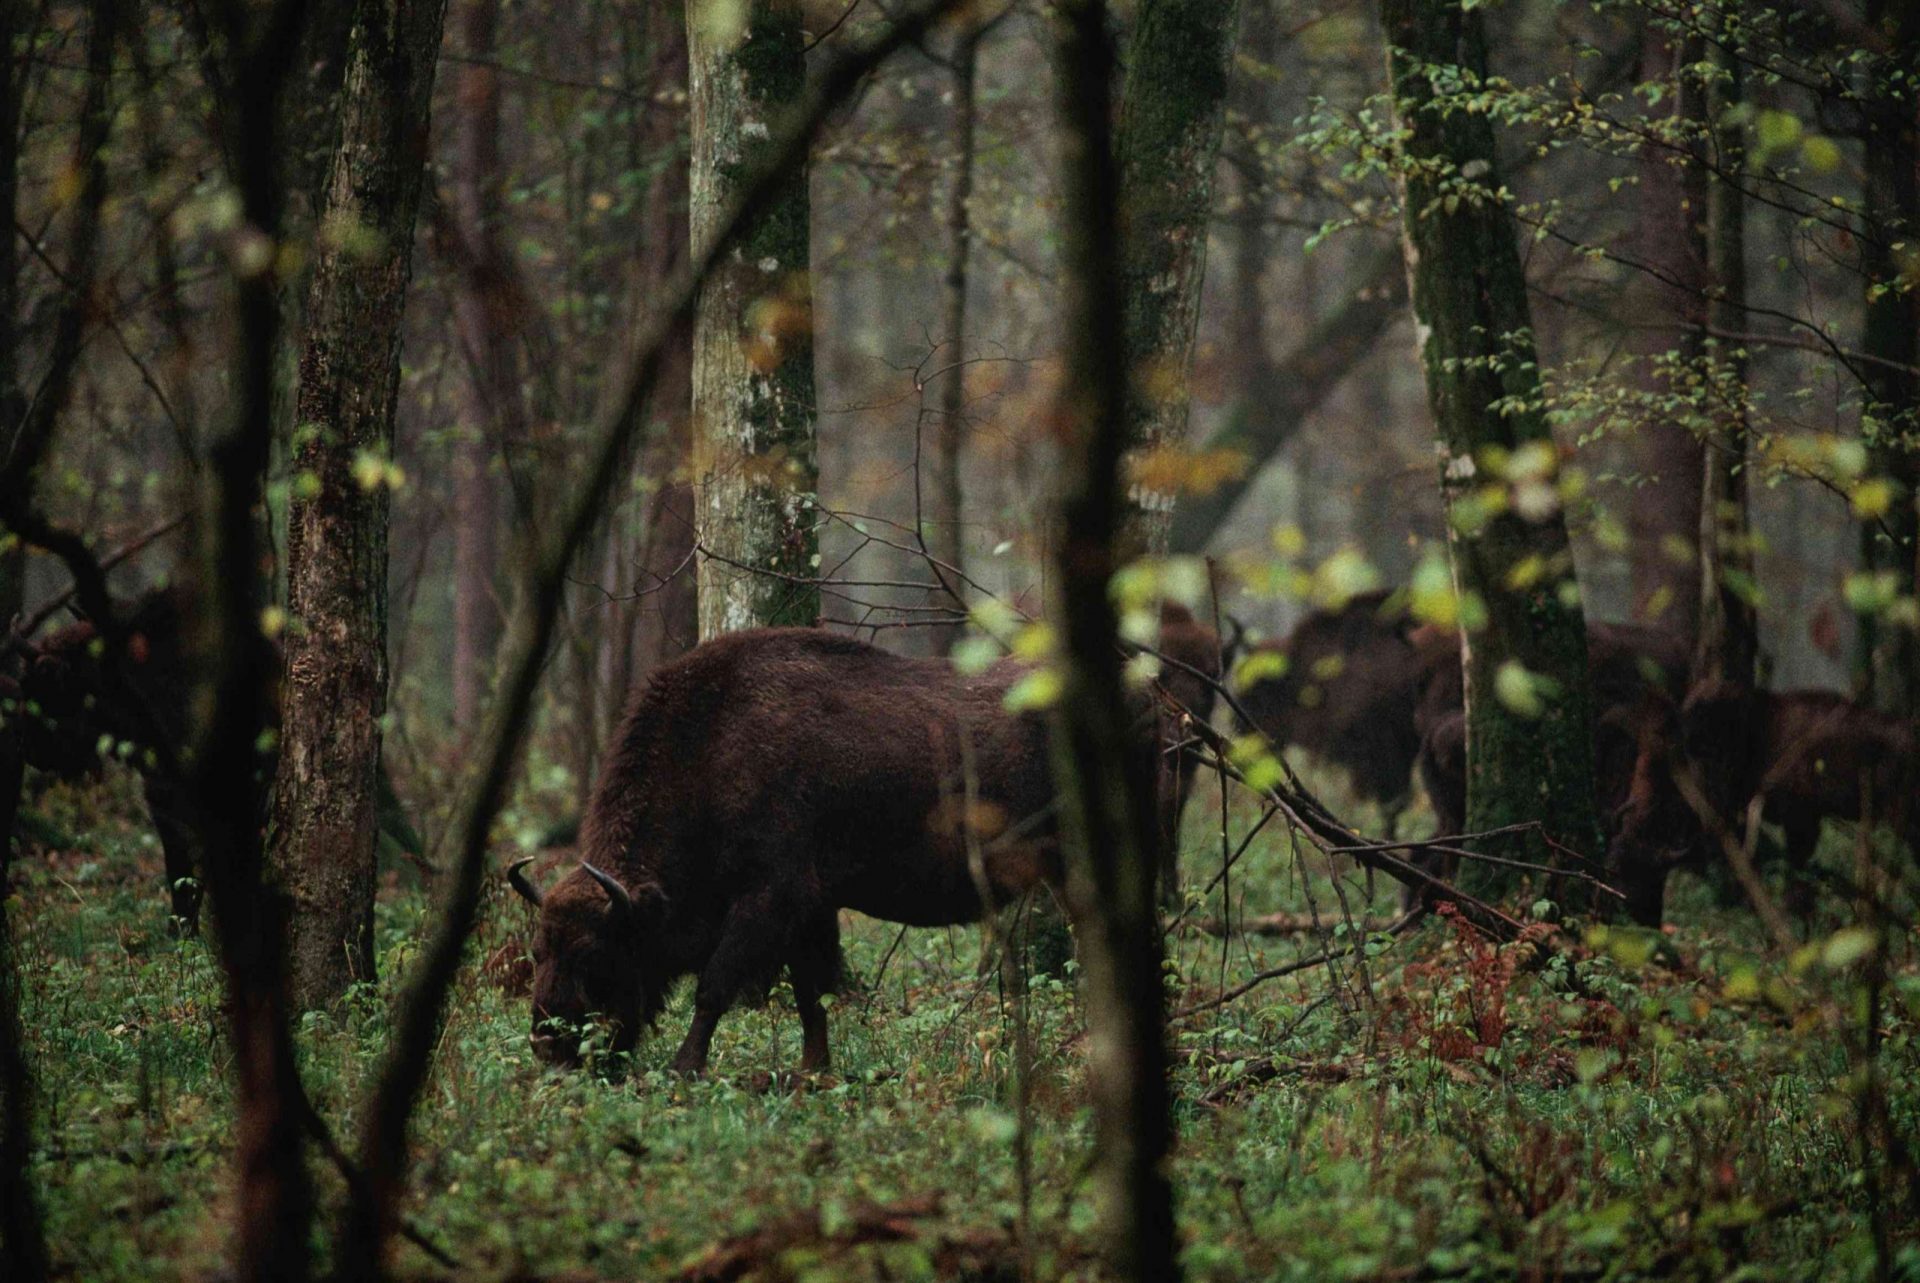 varios bisontes europeos de color marrón oscuro pastando, vistos a través de los árboles